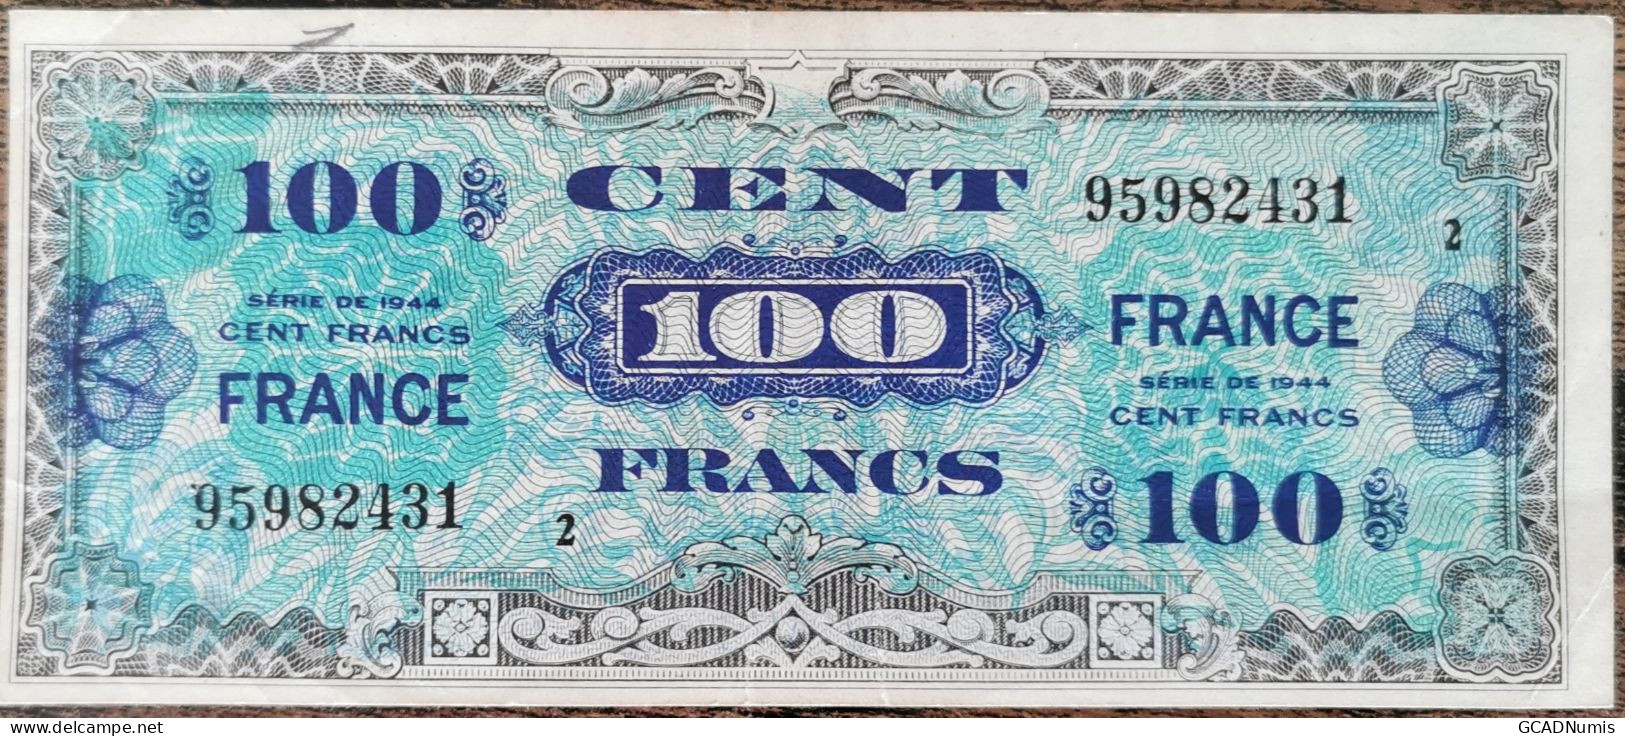 Billet 100 Francs 1944 FRANCE Préparer Par Les USA Pour La Libération Série 2 - 1944 Flagge/Frankreich